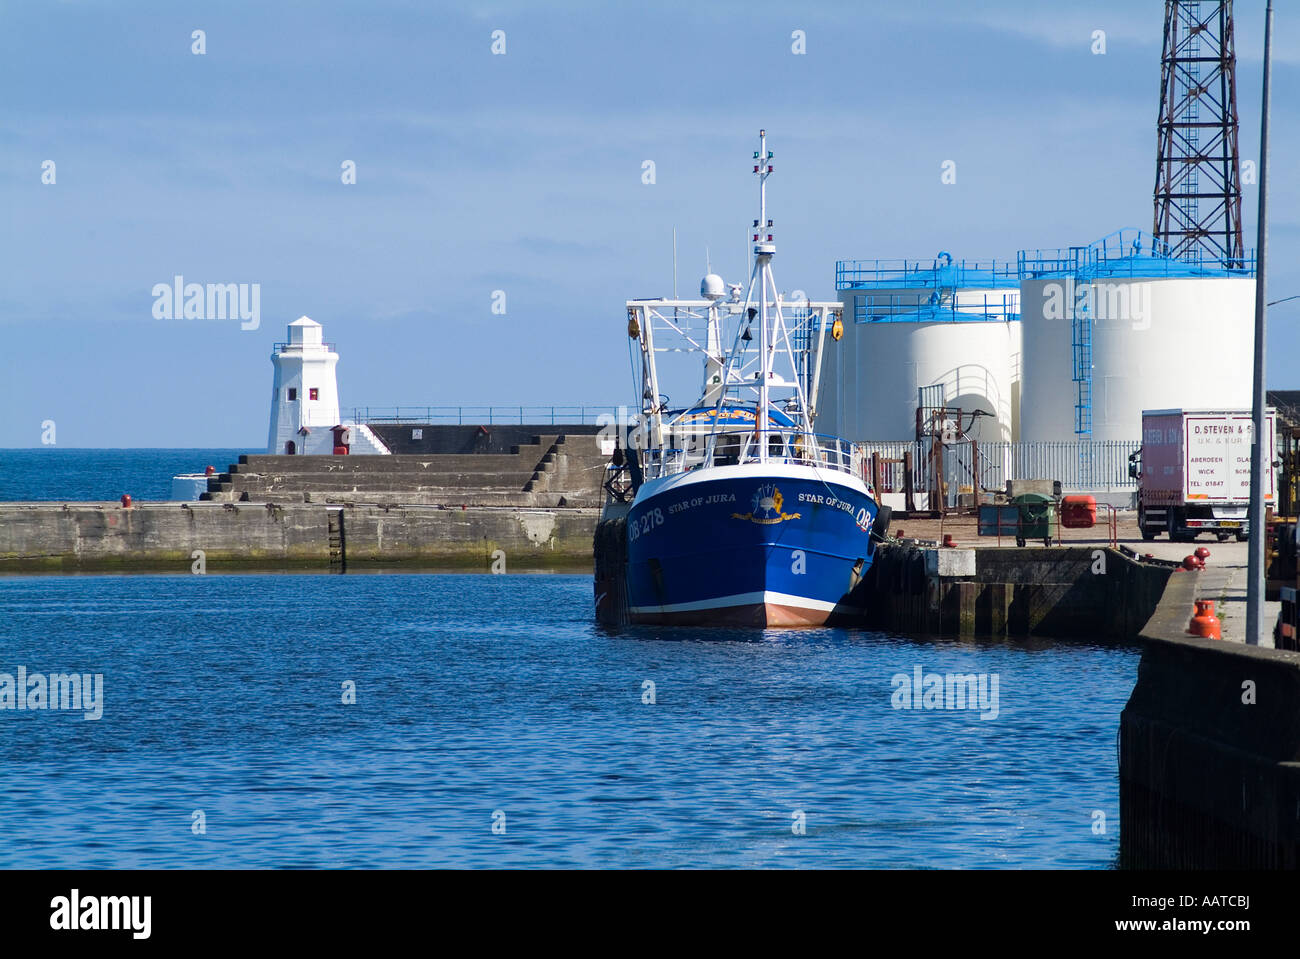 dh Pulteneytown WICK CAITHNESS bateau de pêche écossais le long du quai Wick Harbour docks pêche dock port ecosse chalutier royaume-uni Banque D'Images